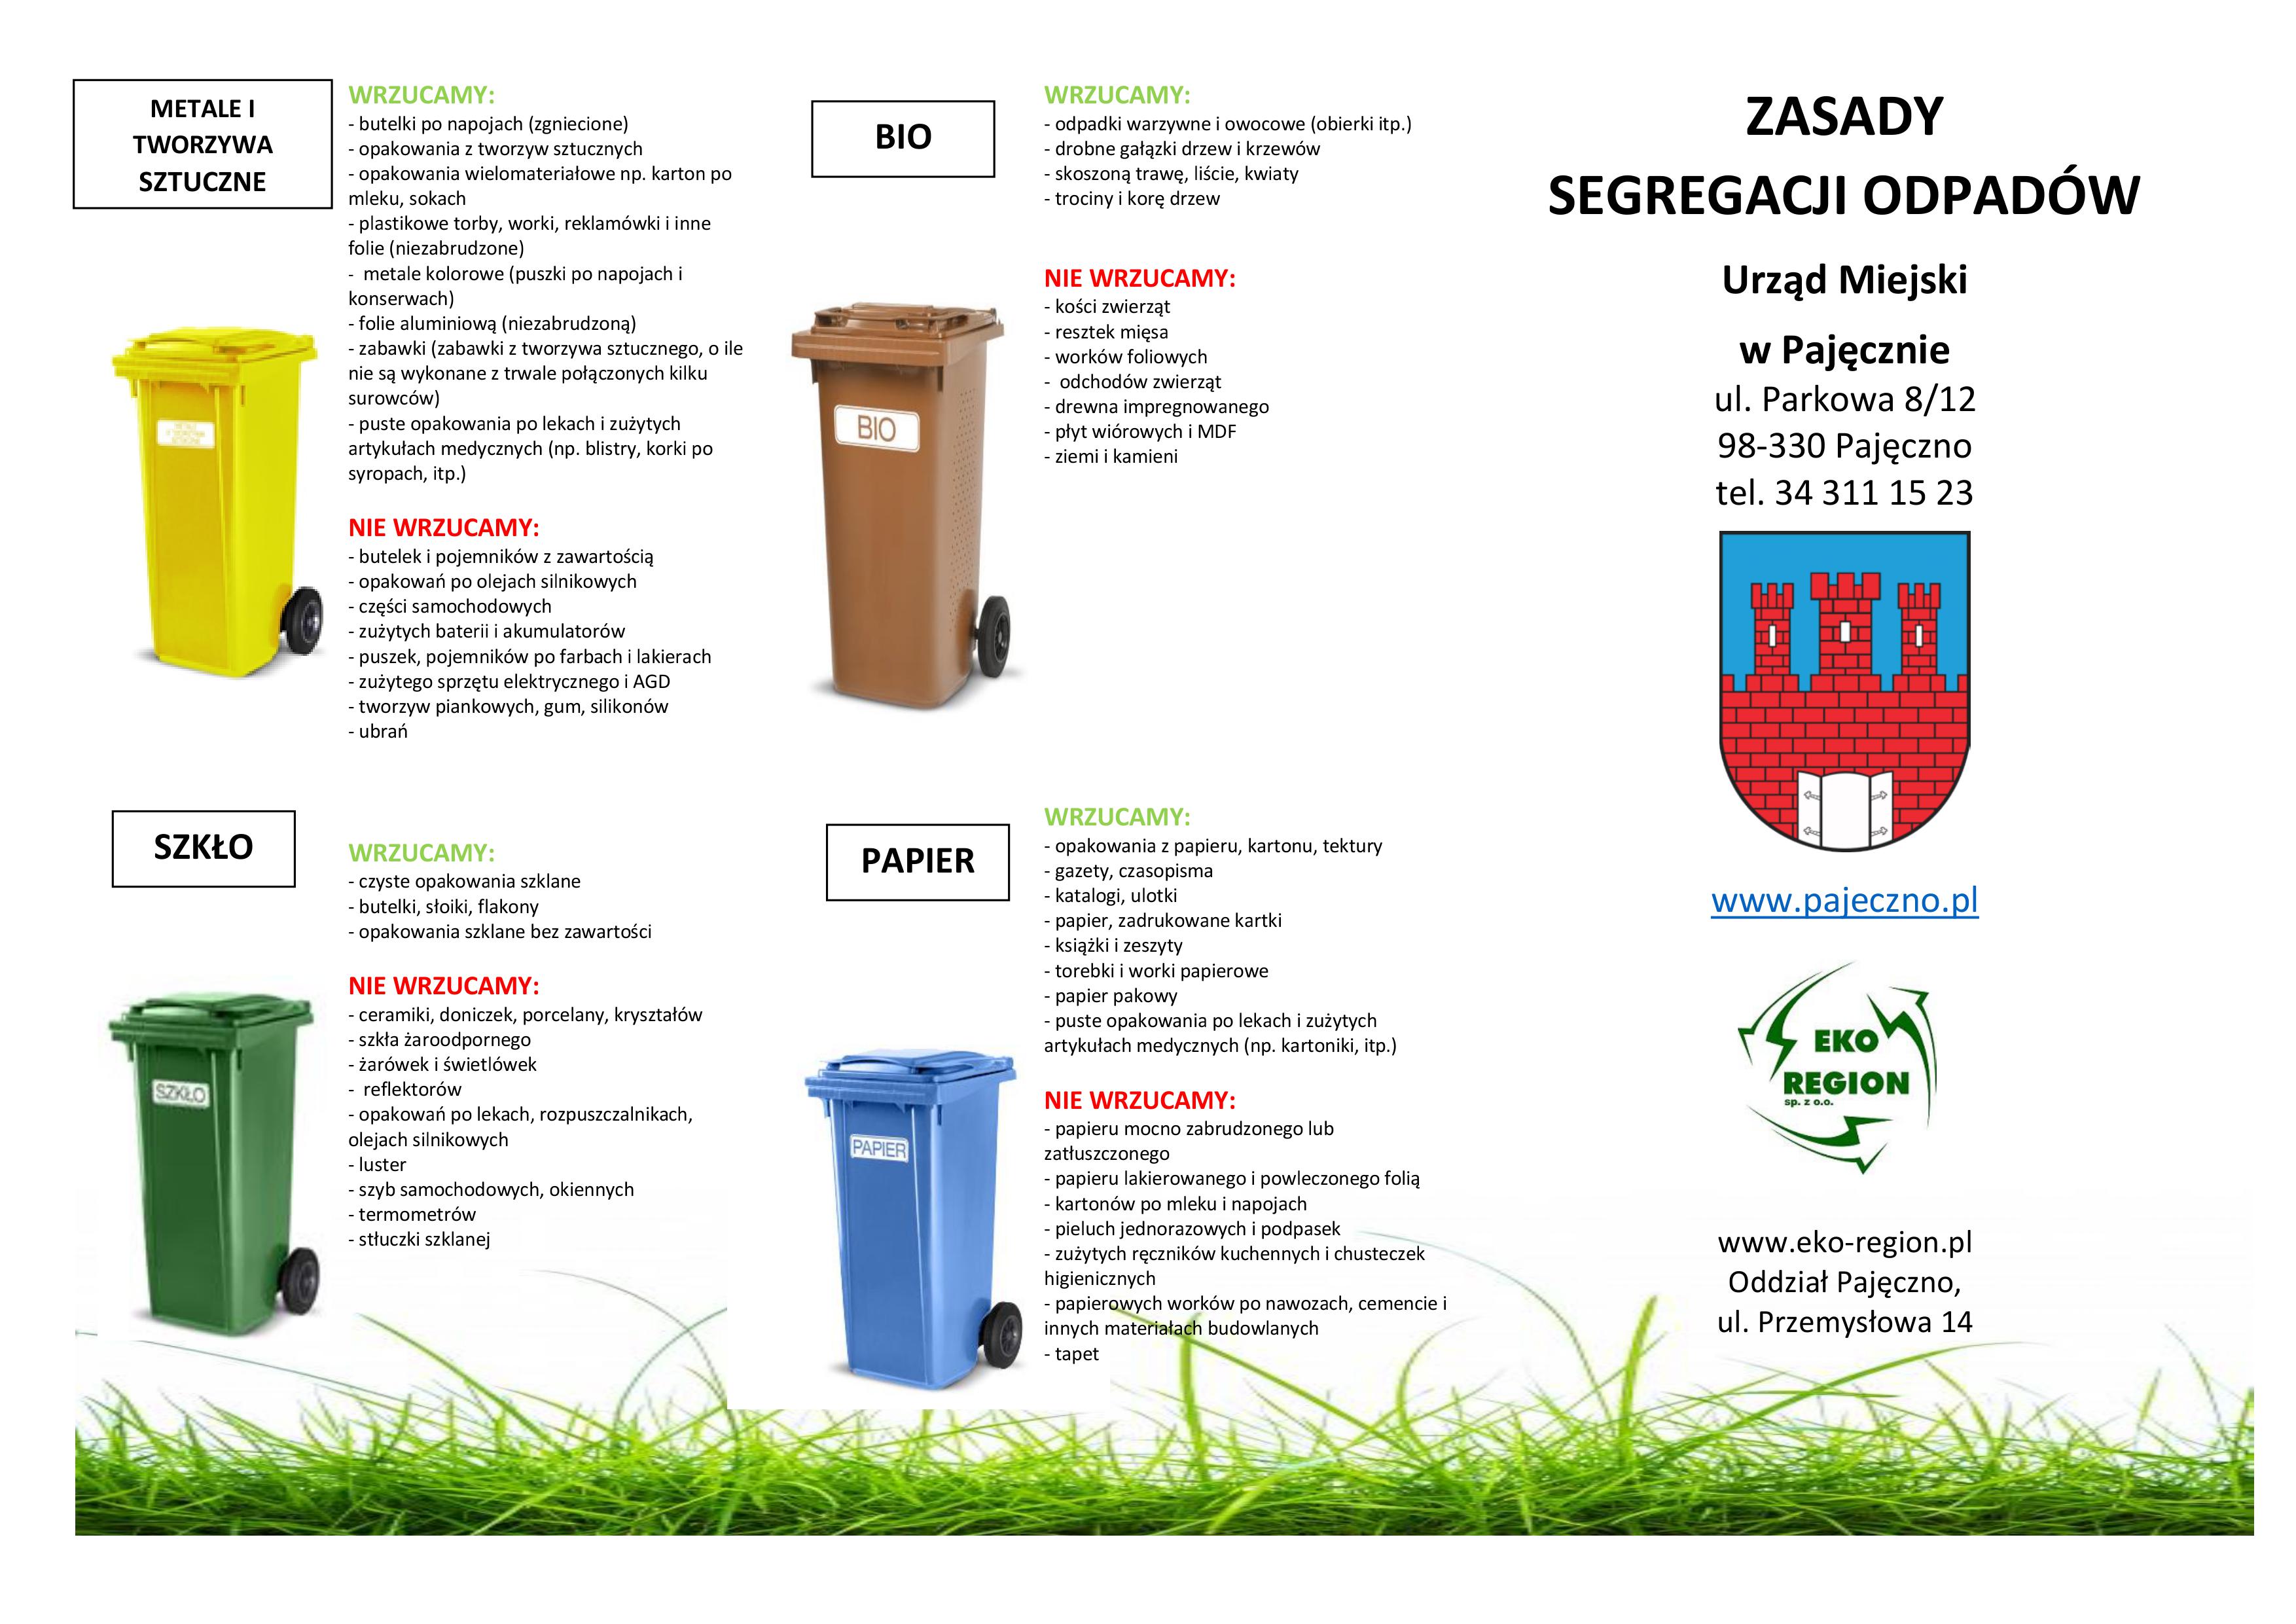 KOMUNIKAT! Oklejanie pojemników na odpady 10.09.2019 r. i 24.09.2019 r.